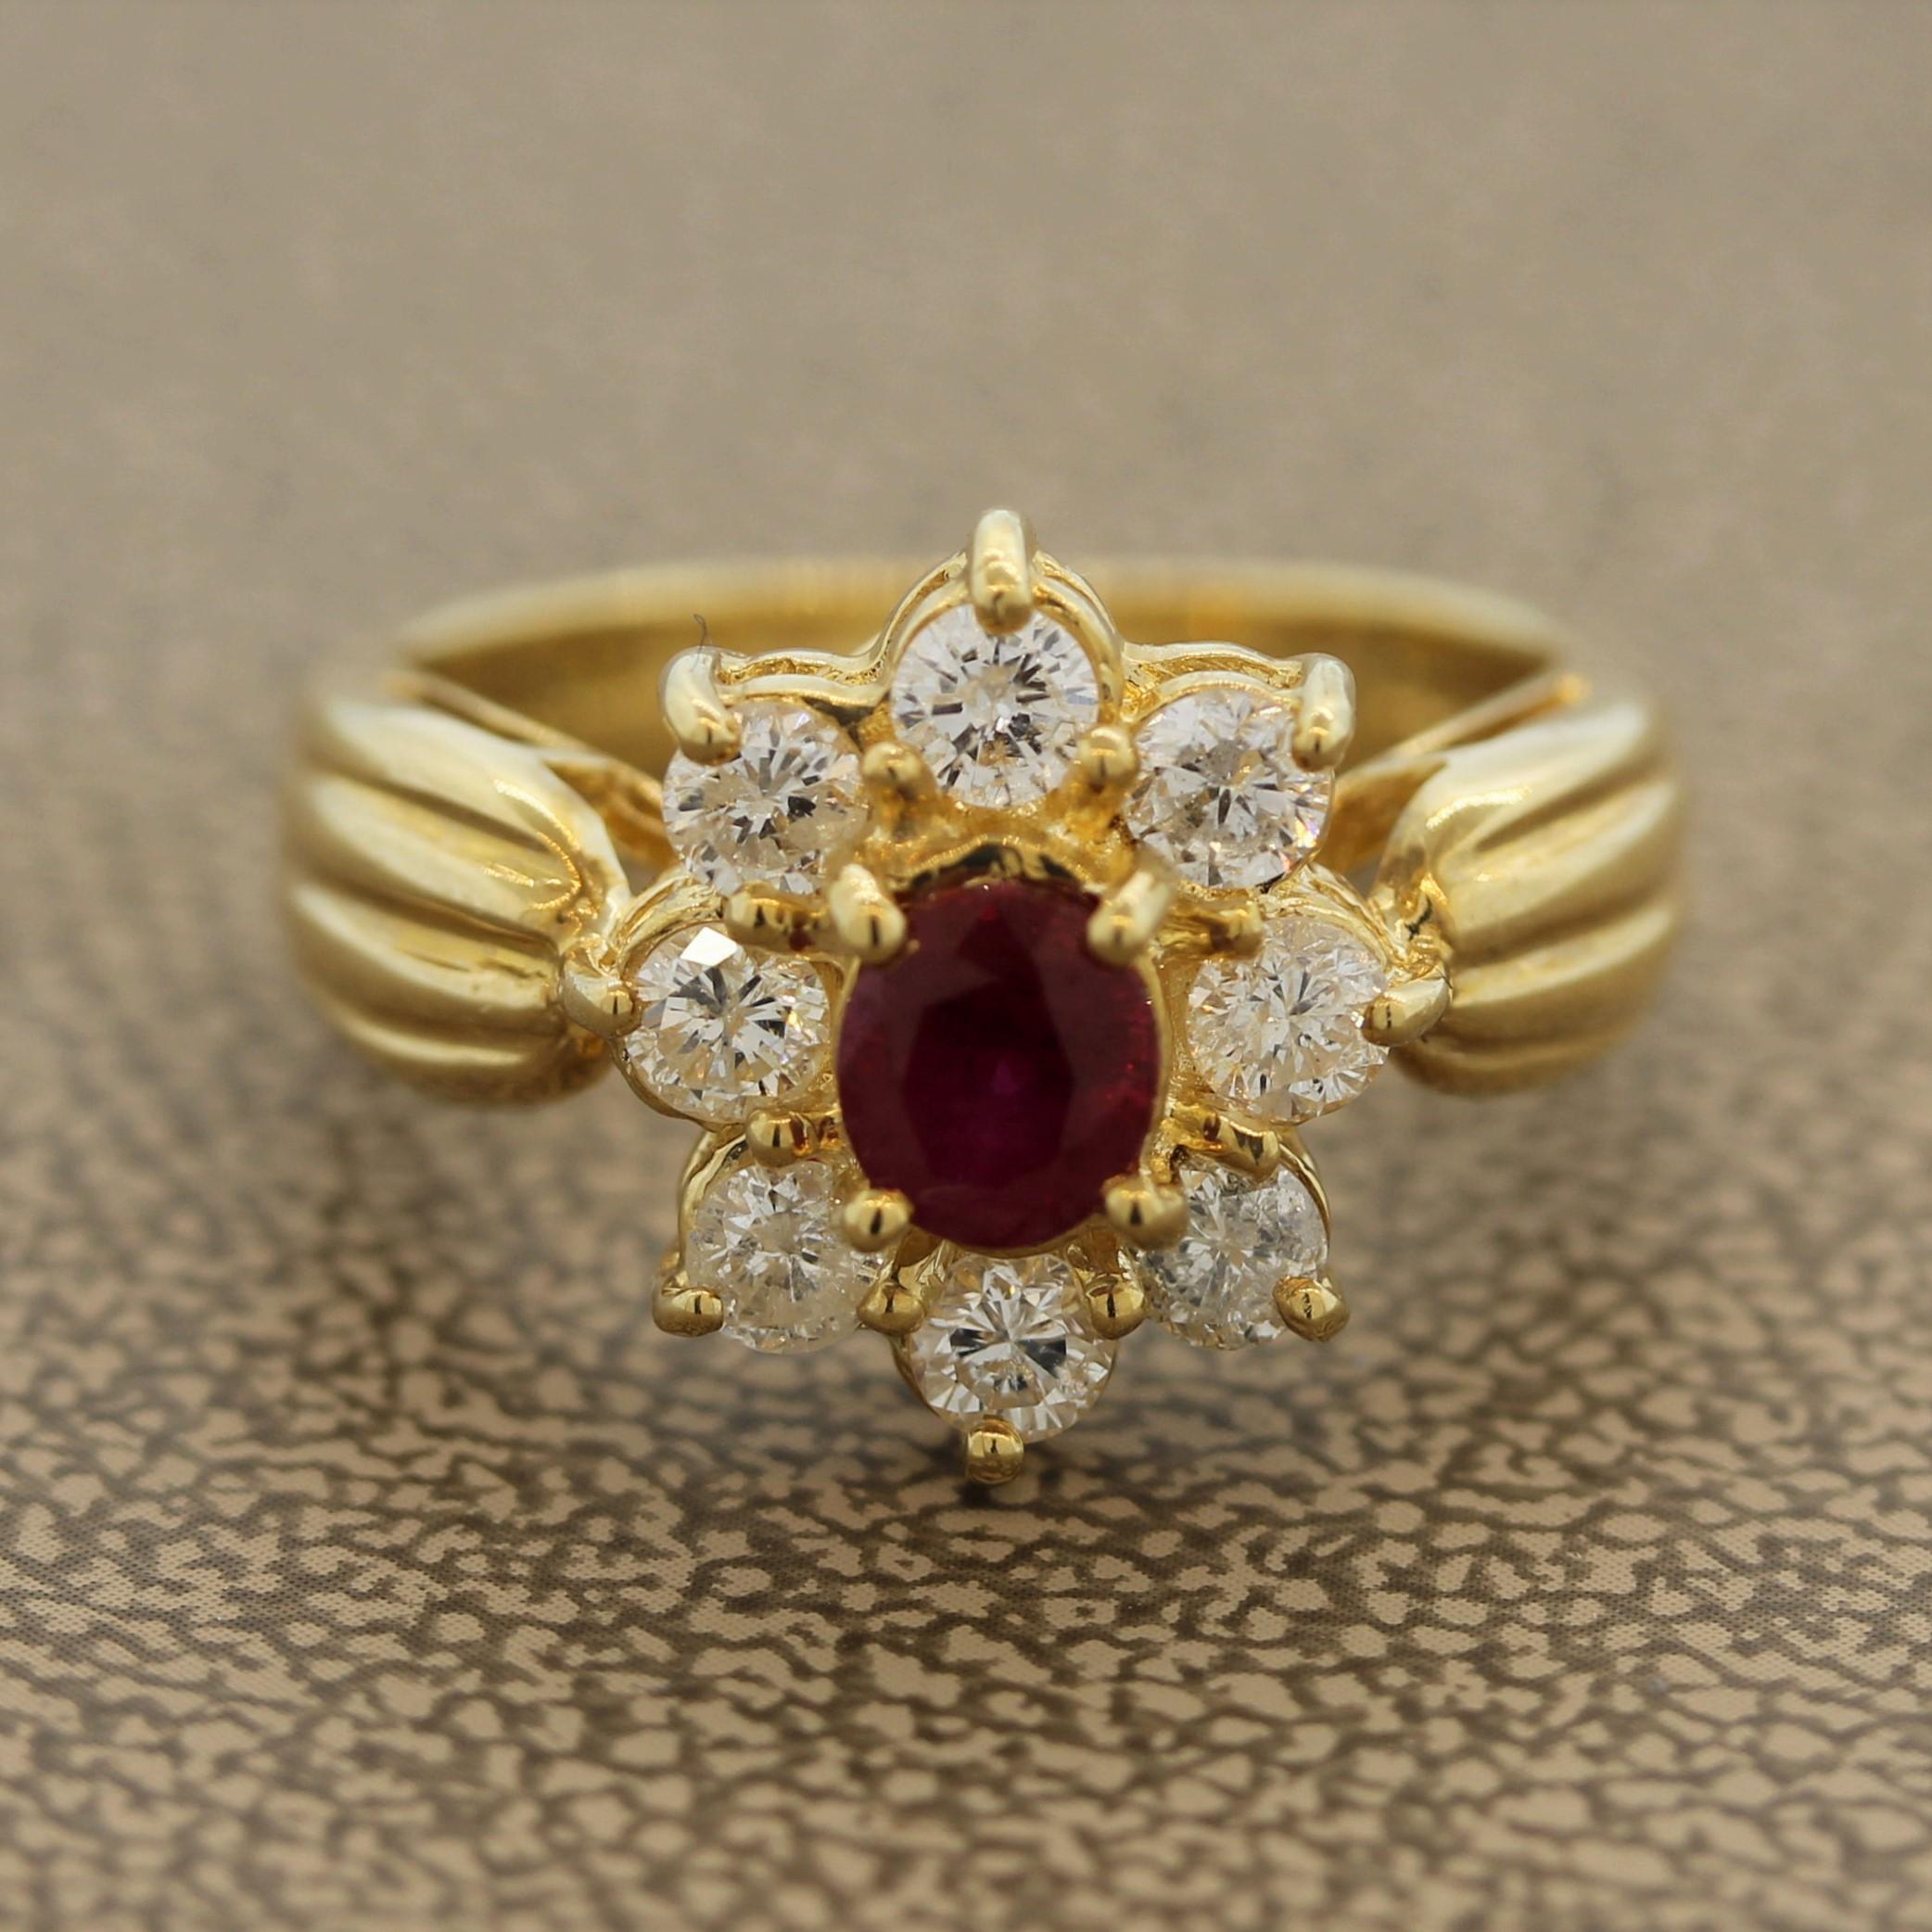 Une bague simple et élégante, ornée d'un rubis ovale de 0,65 carat. Le rubis, d'une belle couleur rouge vif, est entouré d'un halo de 0,85 carats de diamants ronds de taille brillant qui forment un motif de fleur. Fabriqué en or jaune 18k.

Taille